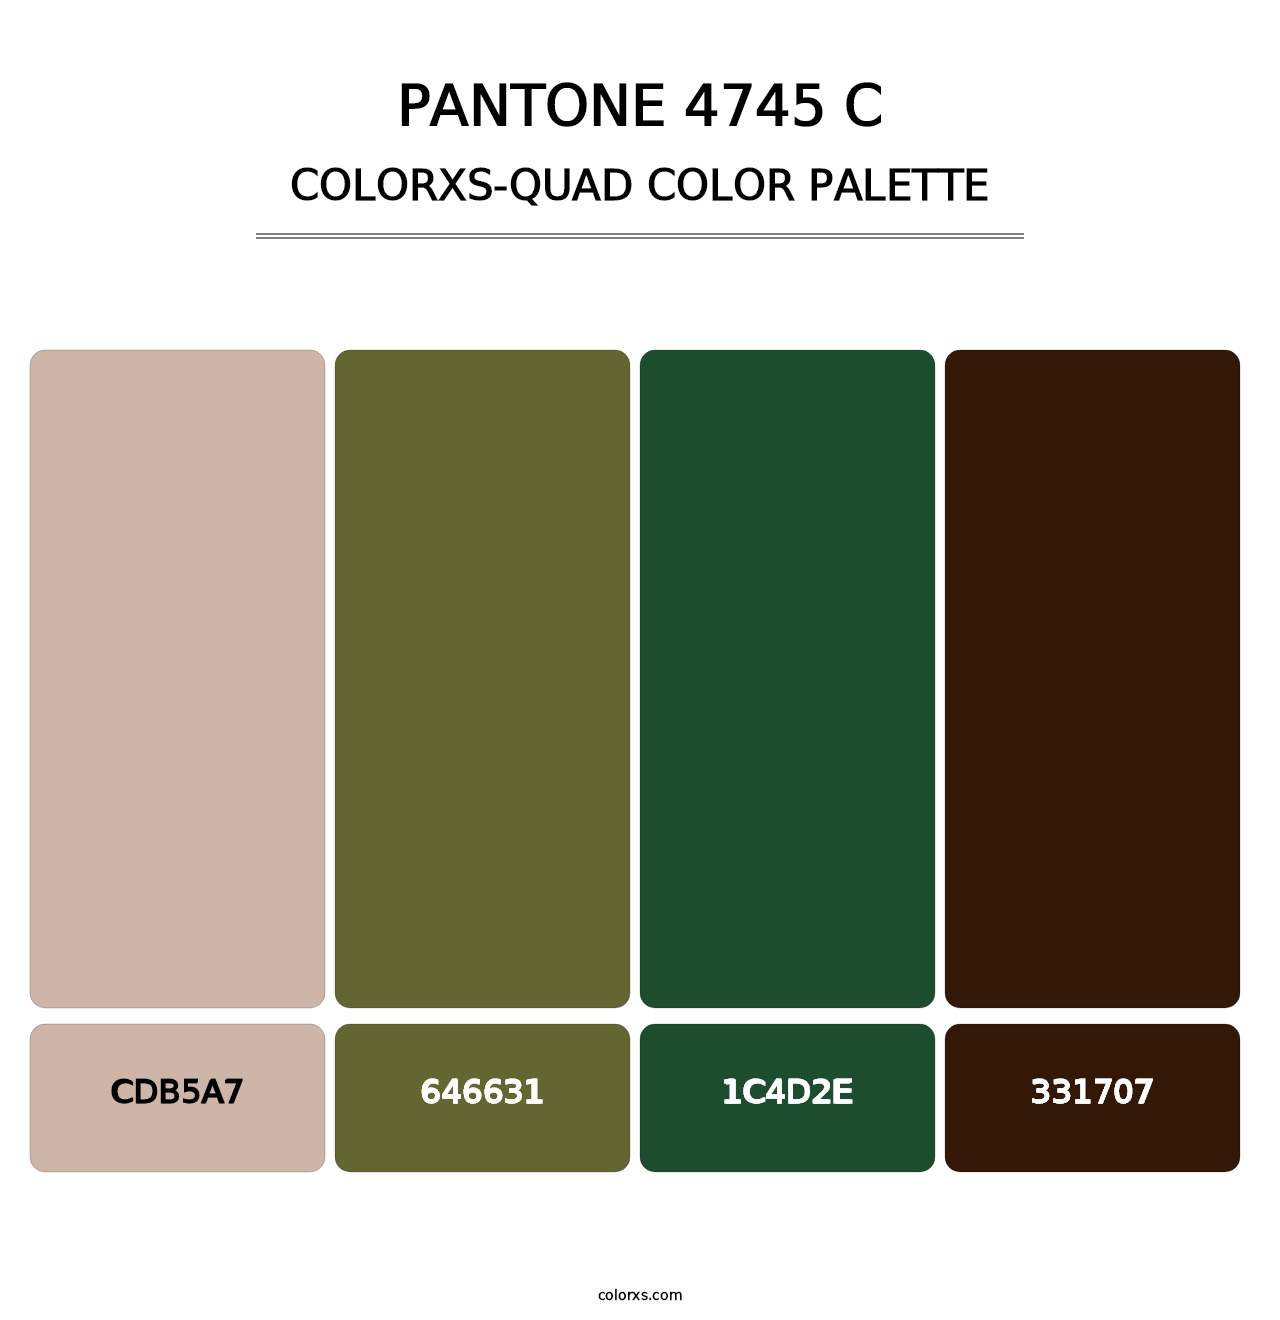 PANTONE 4745 C - Colorxs Quad Palette